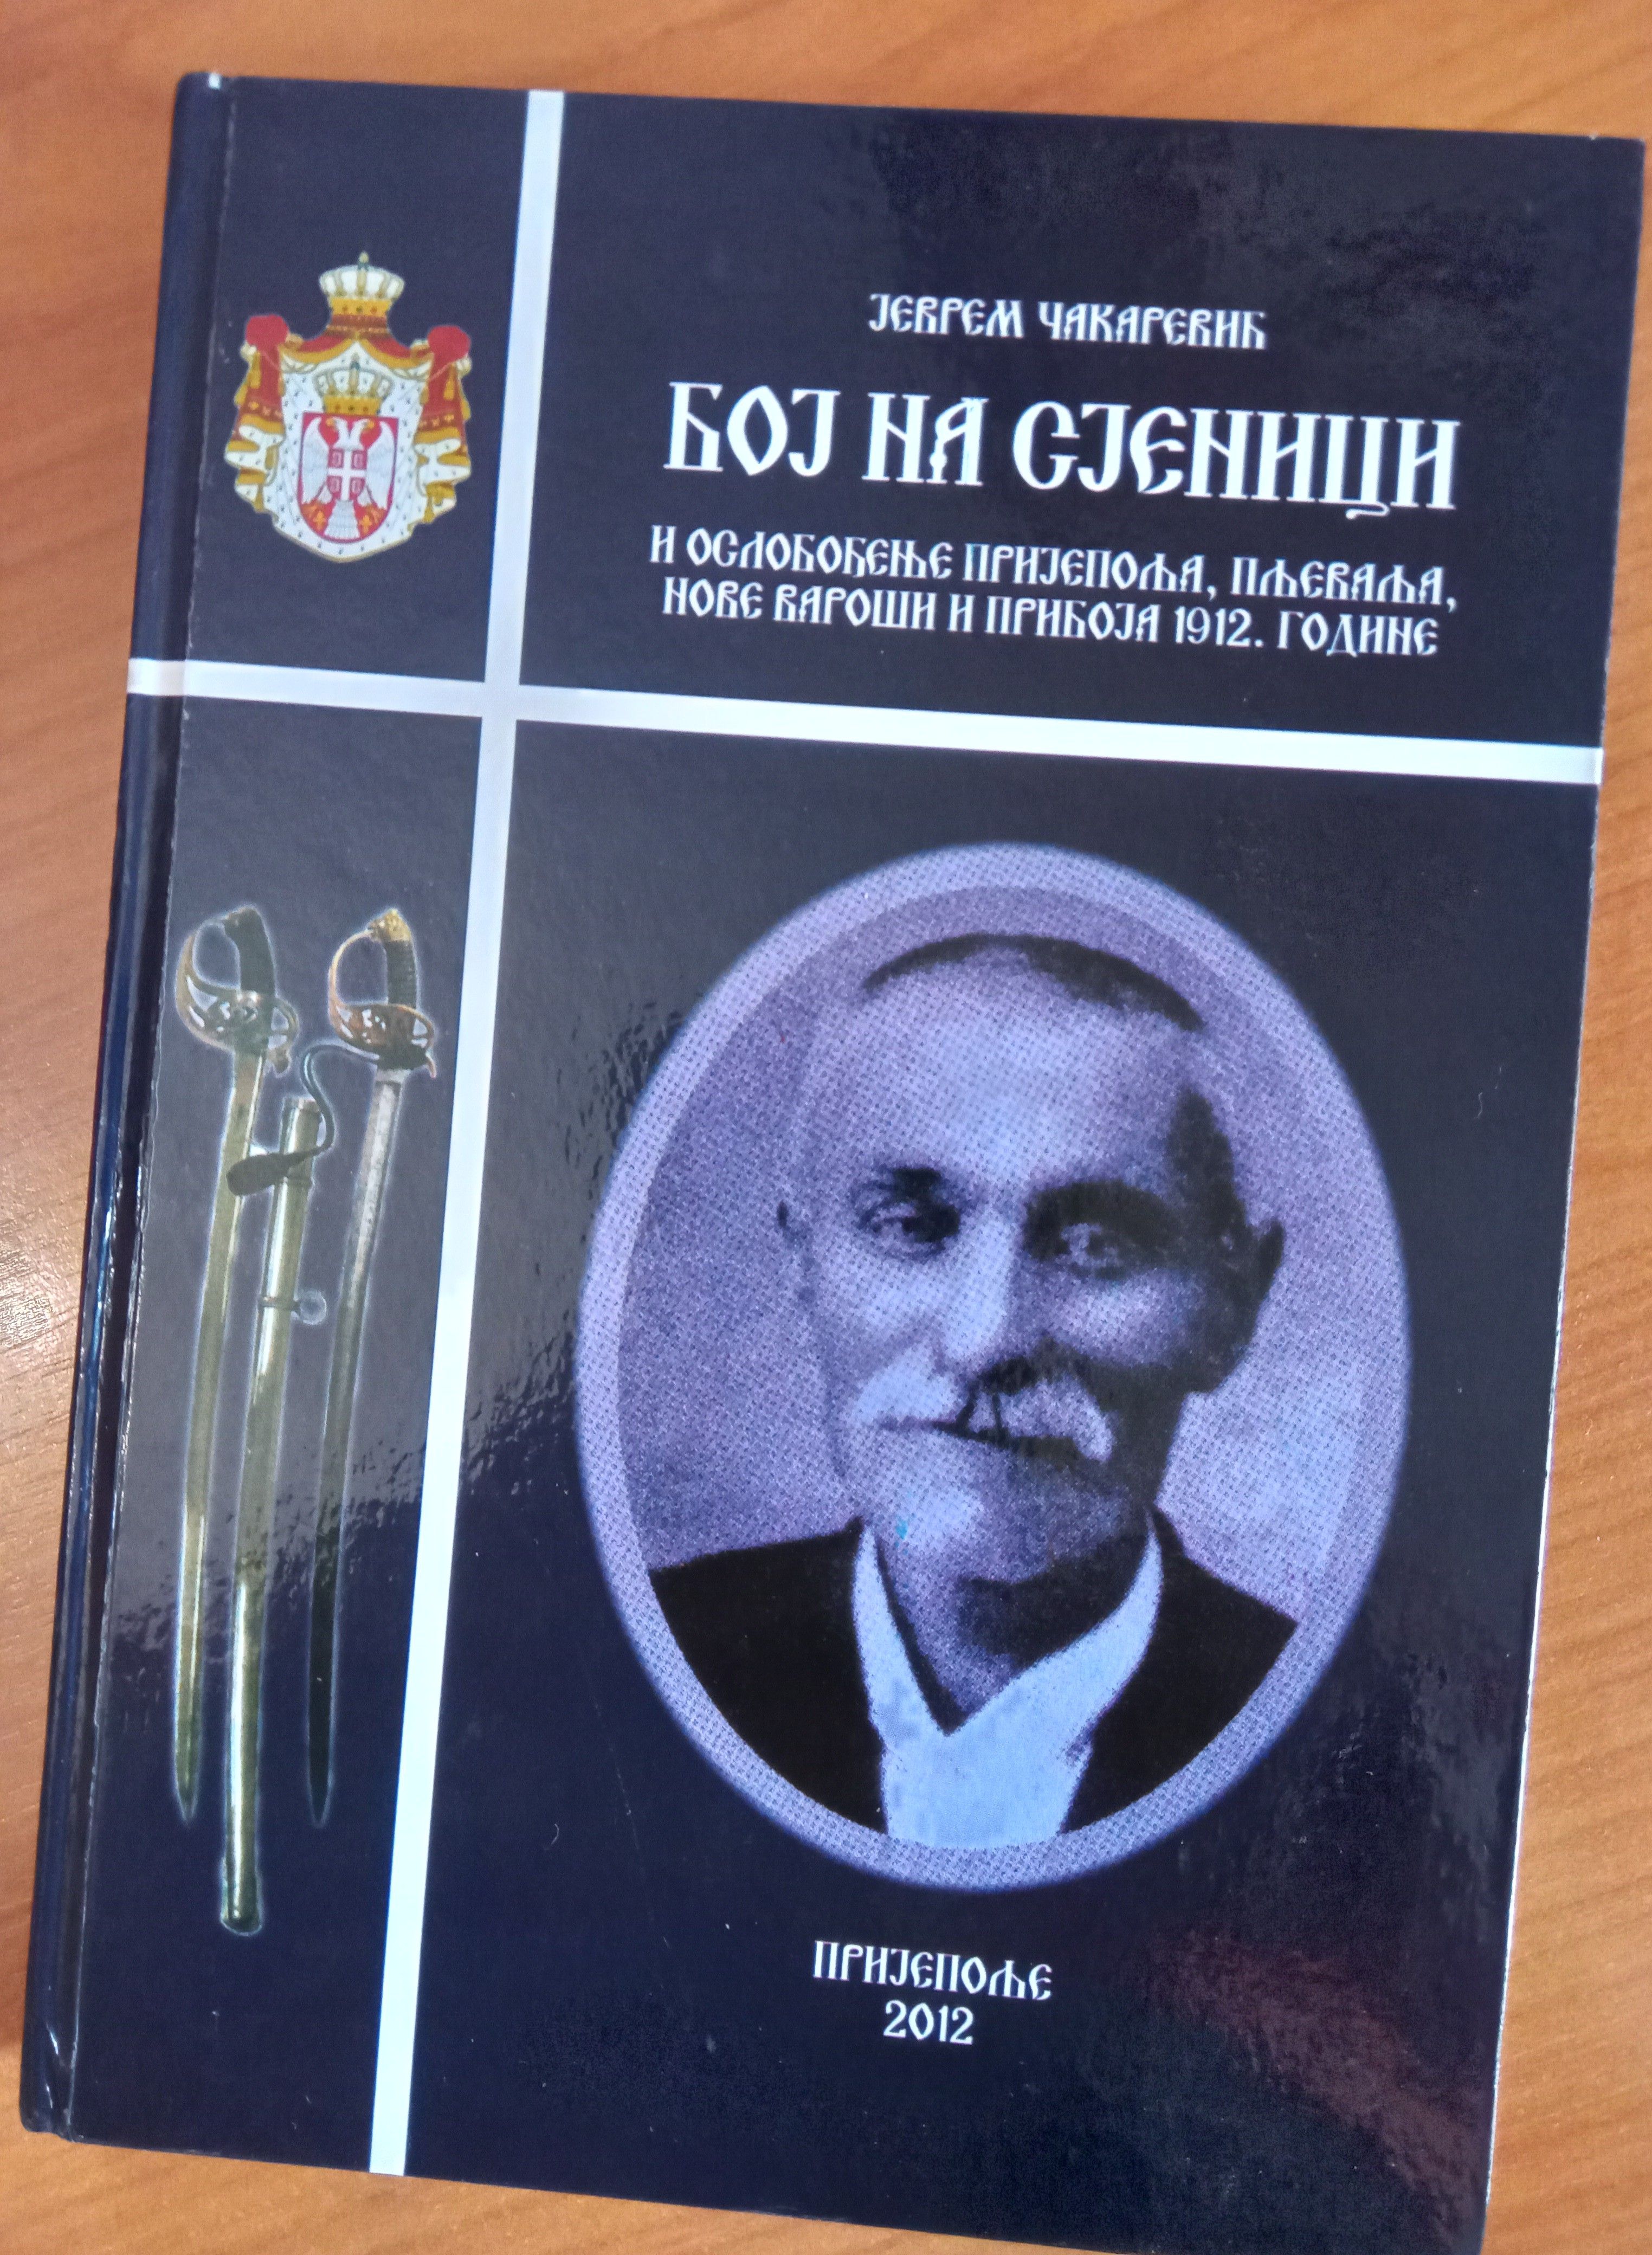 Десетерац учитеља и гуслара Јеврема Чакаревића